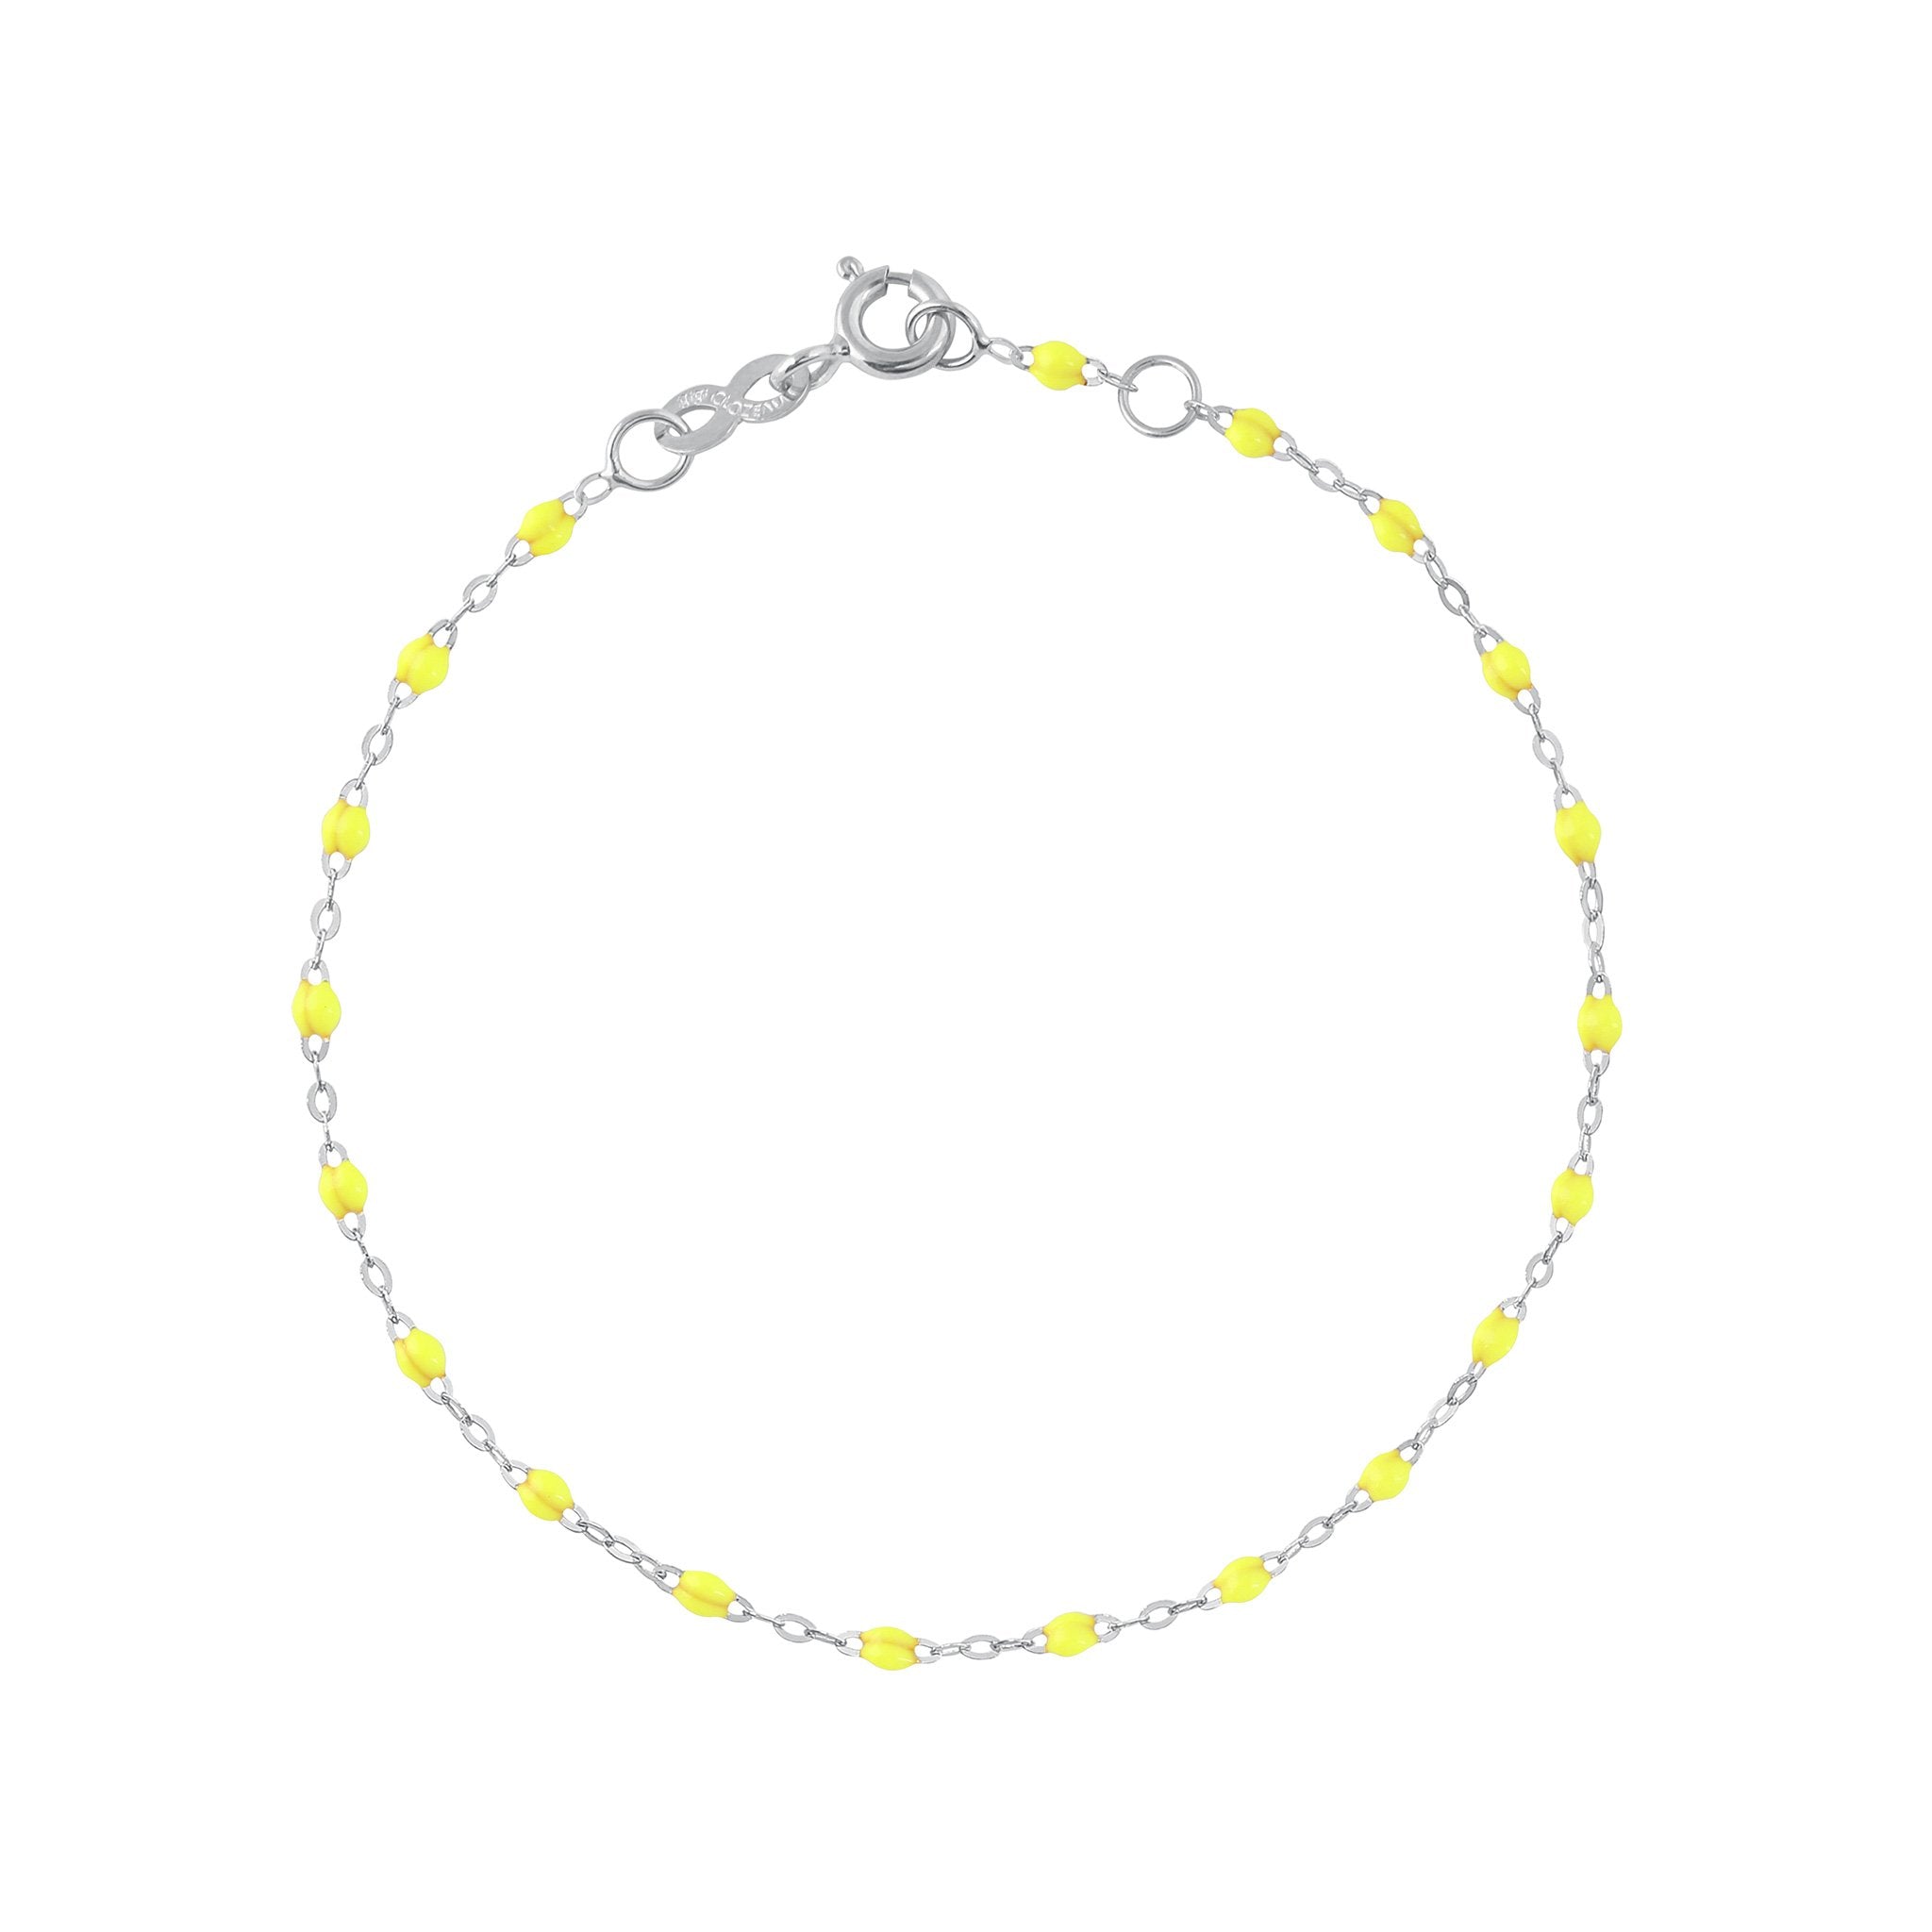 Gigi Clozeau - Bracelet jaune fluo Classique Gigi, or blanc, 19 cm